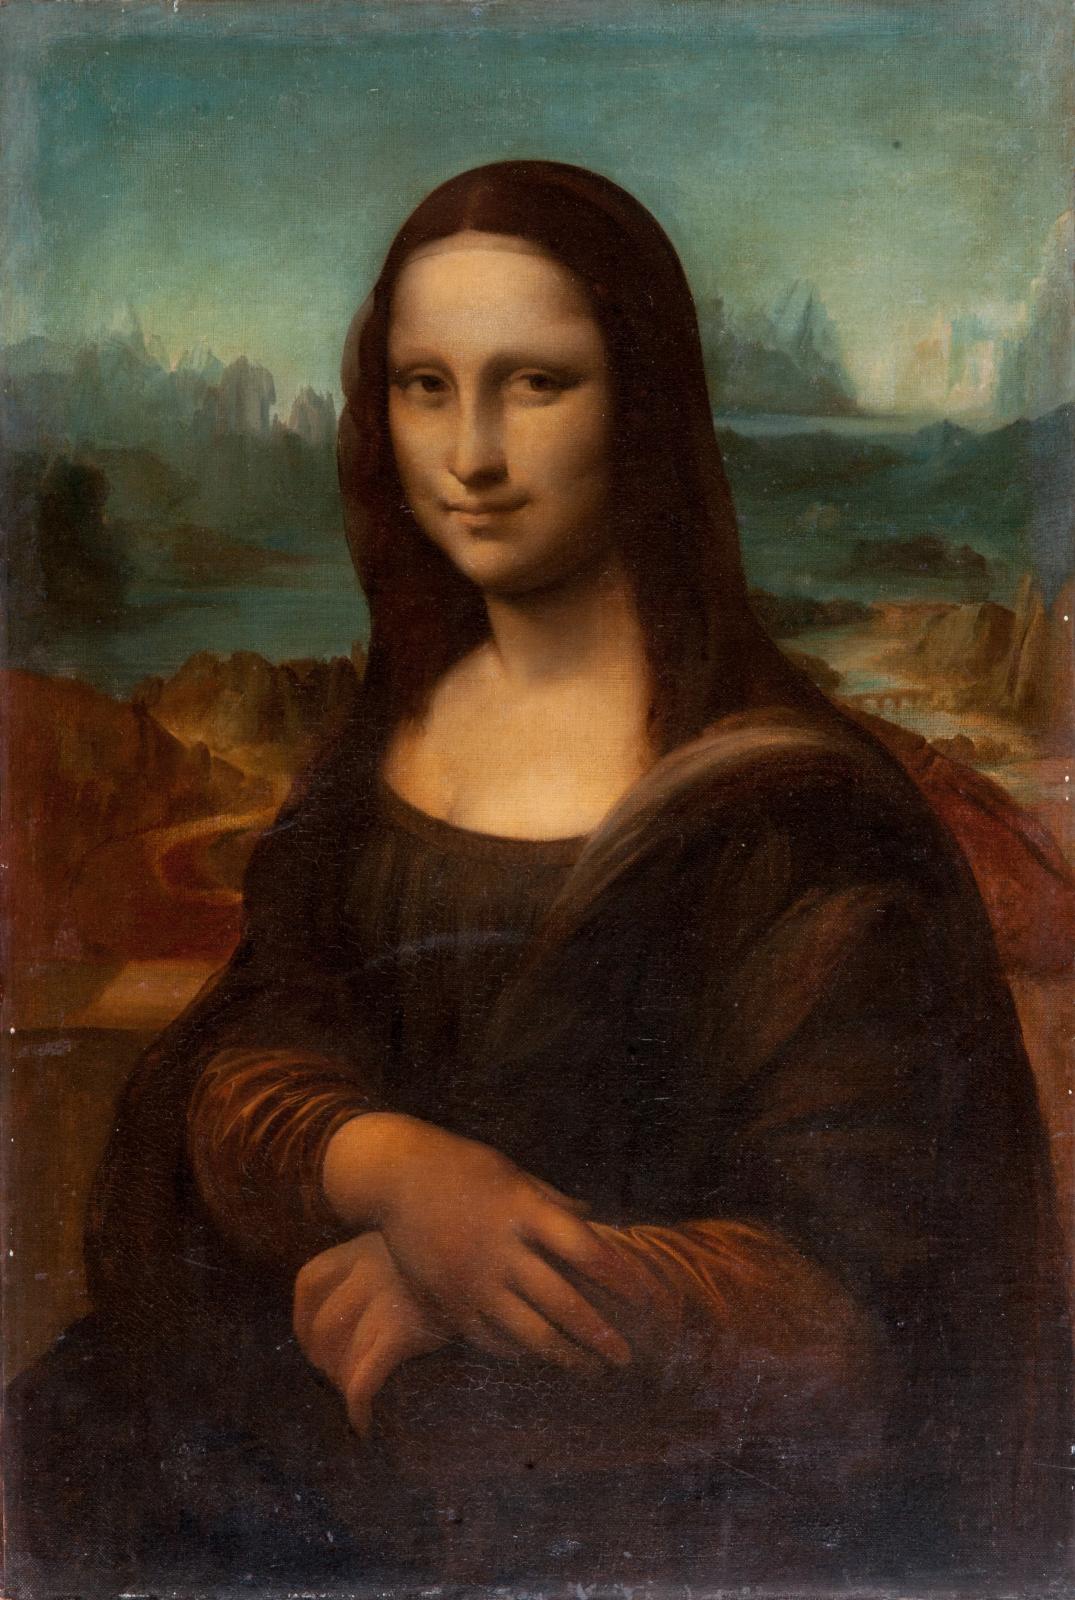 Multiplying Mona Lisas